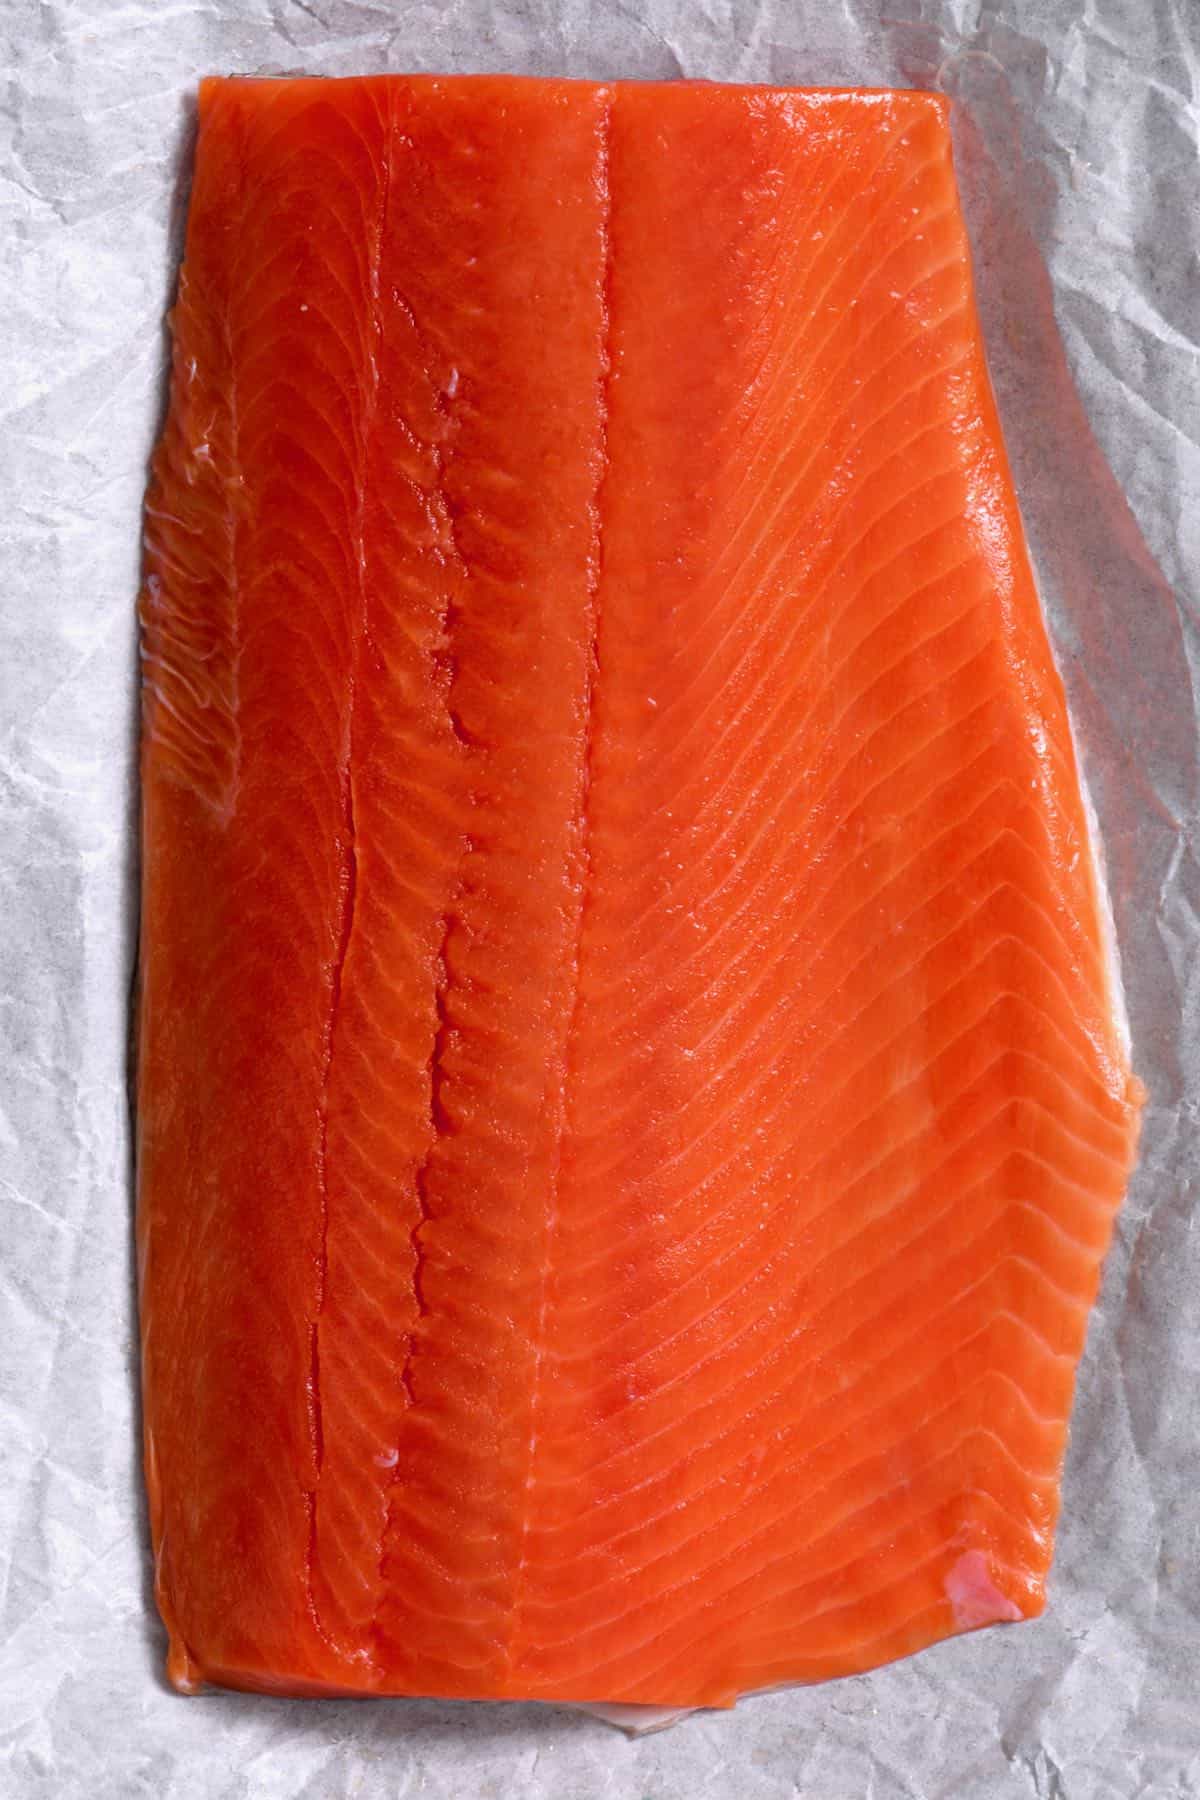 raw wild salmon on a baking sheet